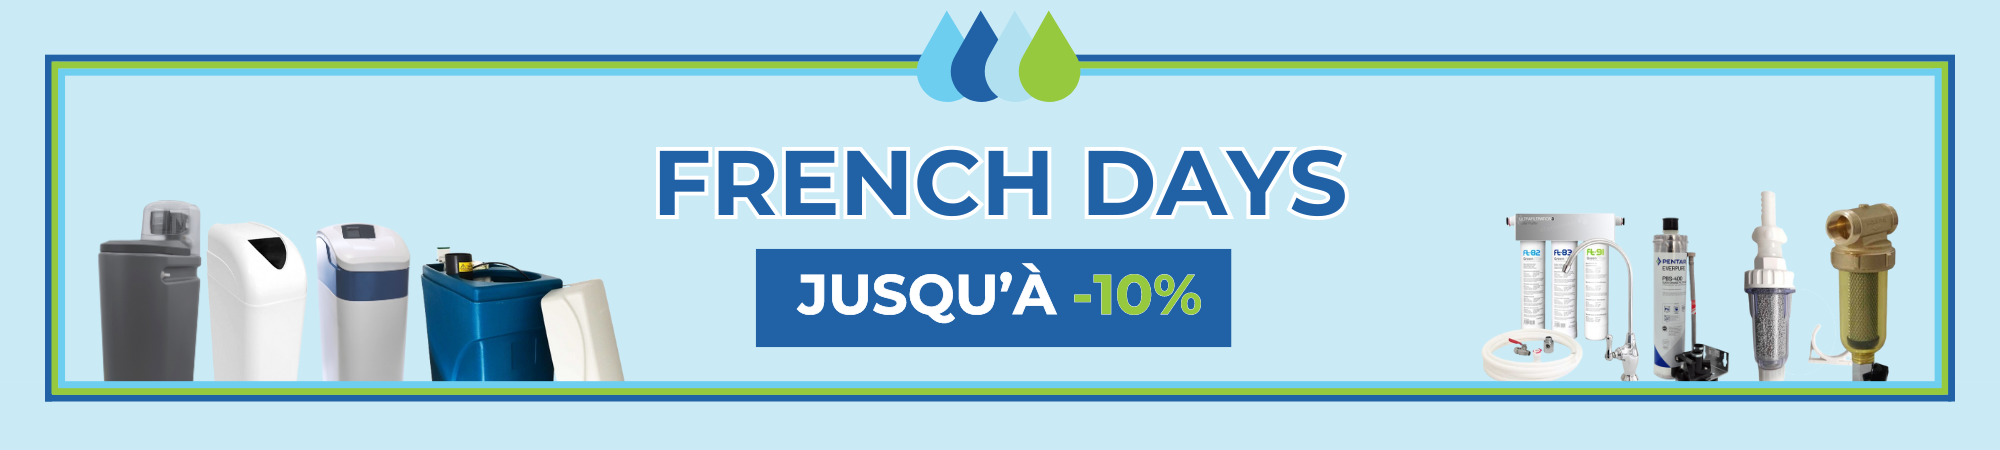 Les French Days sont là ! Jusqu'à 10% de réduction sur nos best-sellers !